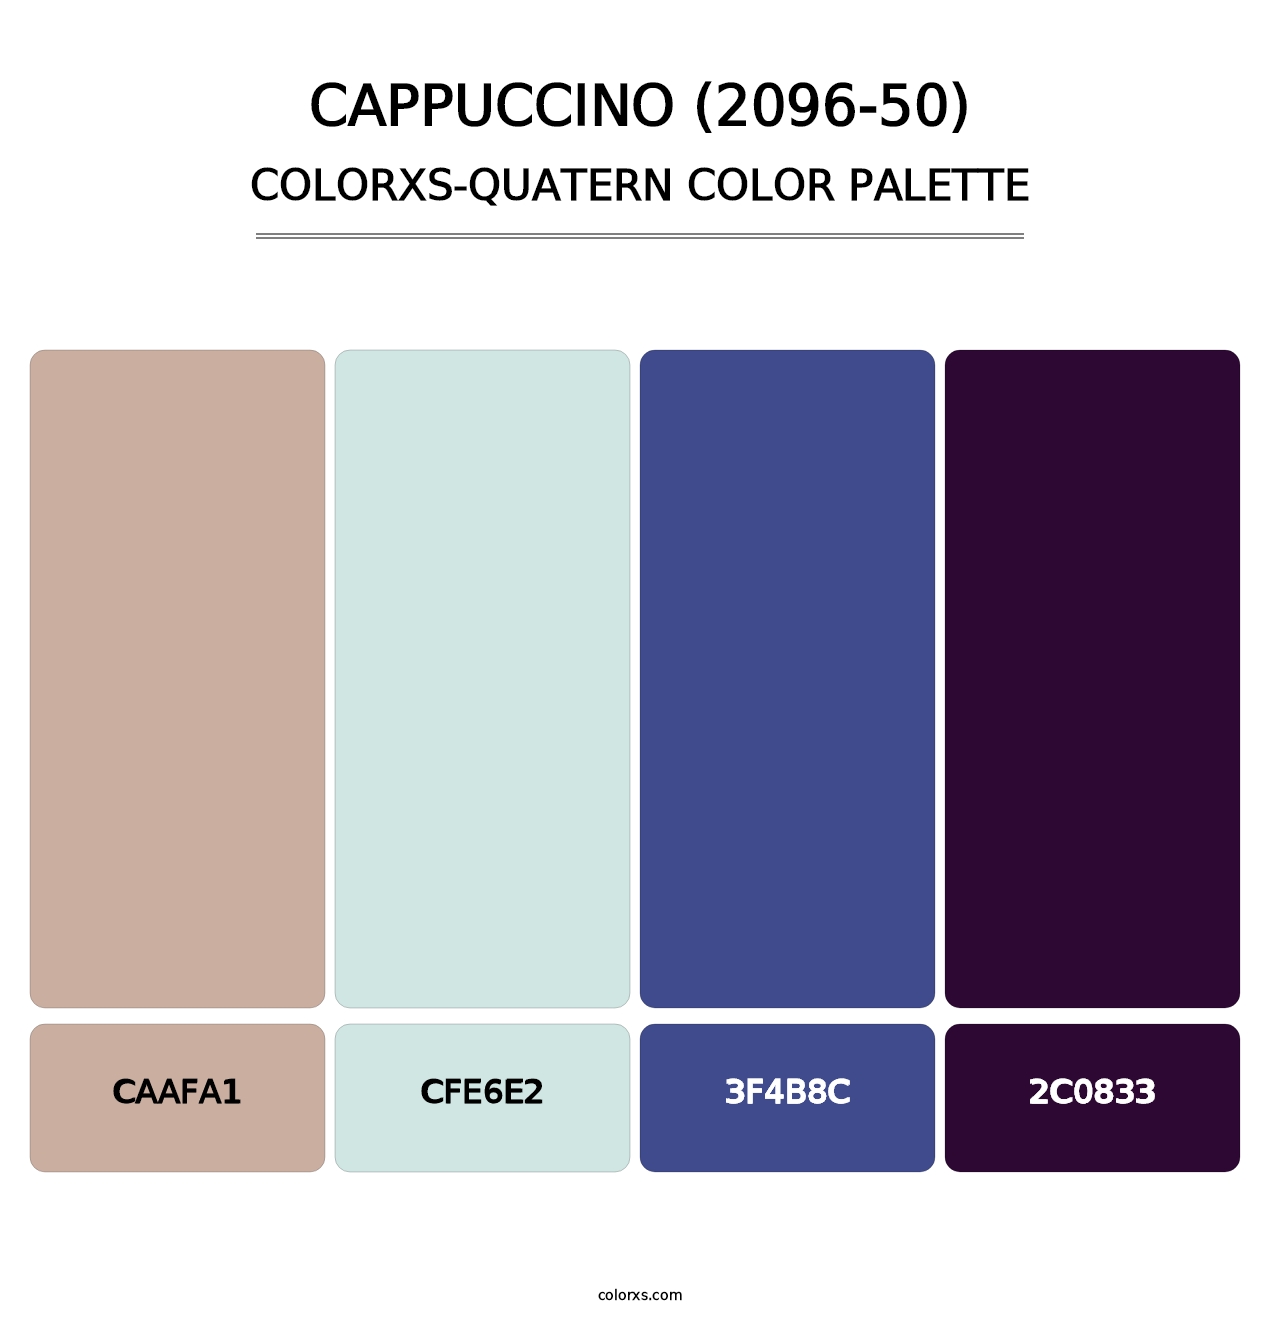 Cappuccino (2096-50) - Colorxs Quatern Palette